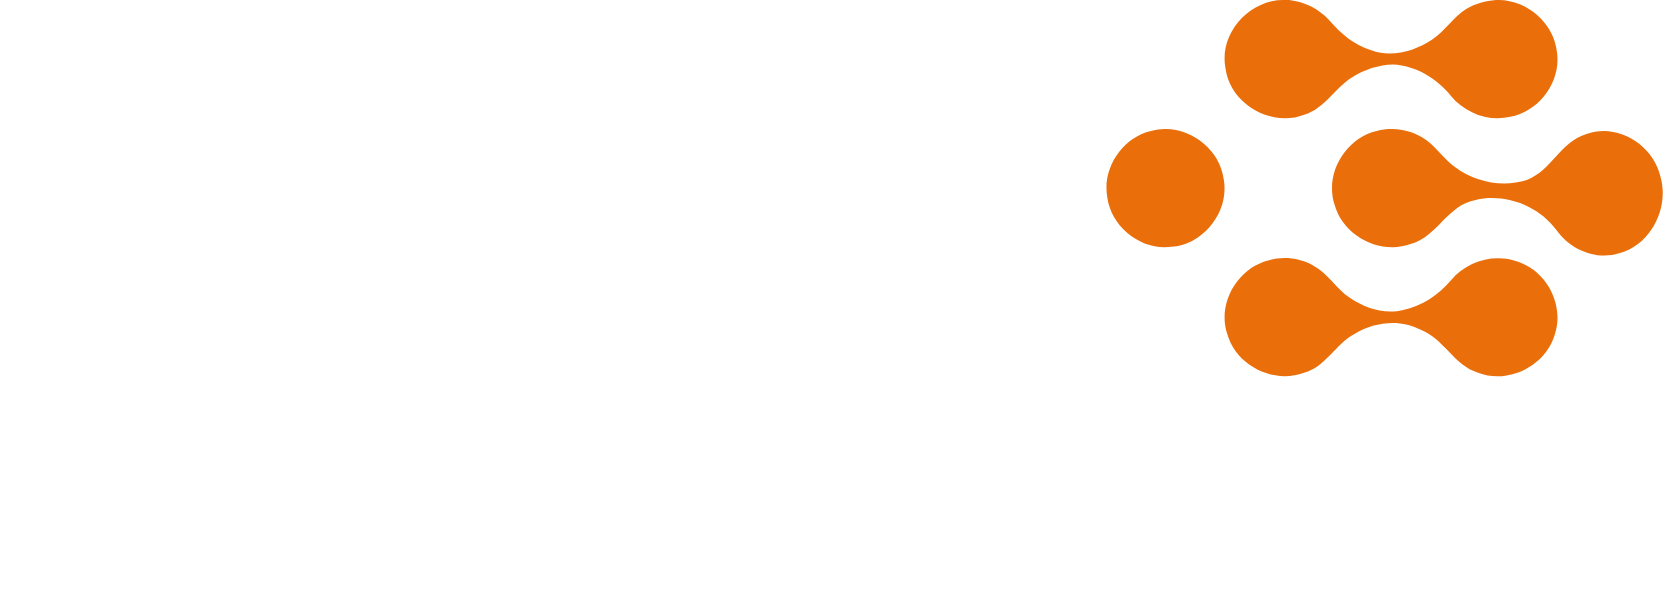 Keyera logo large for dark backgrounds (transparent PNG)